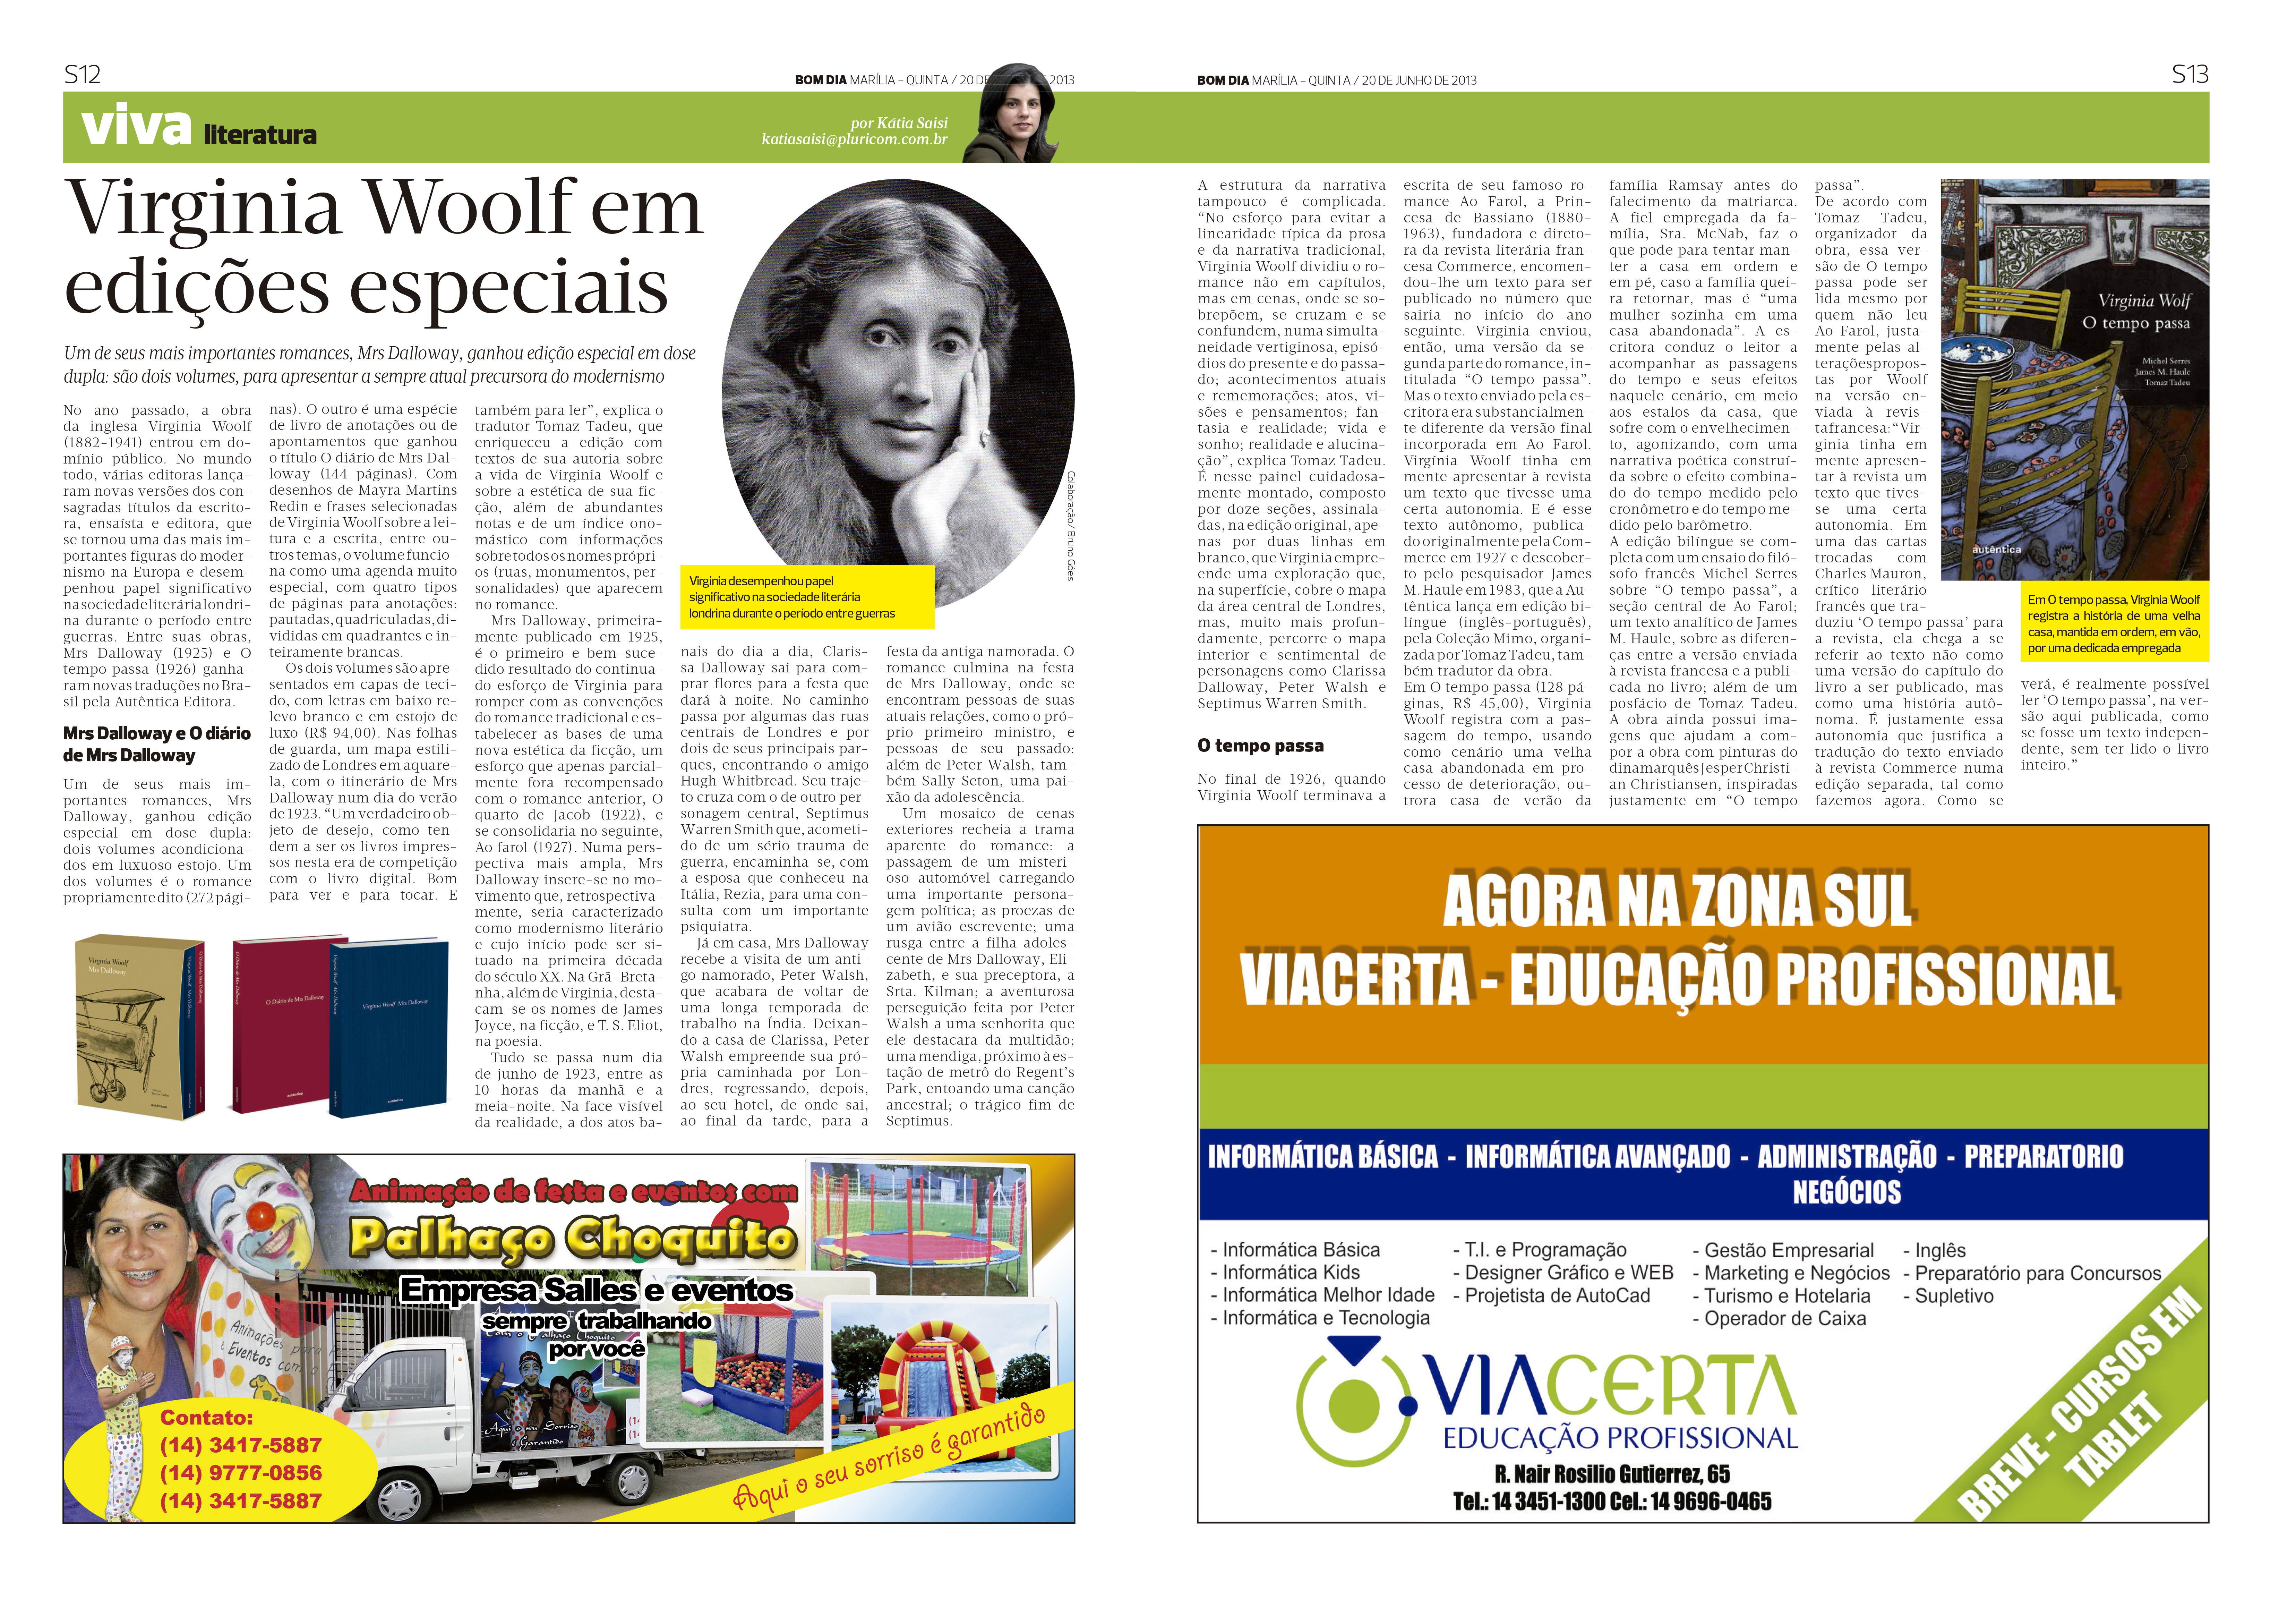 Virginia Woolf em edições especiais